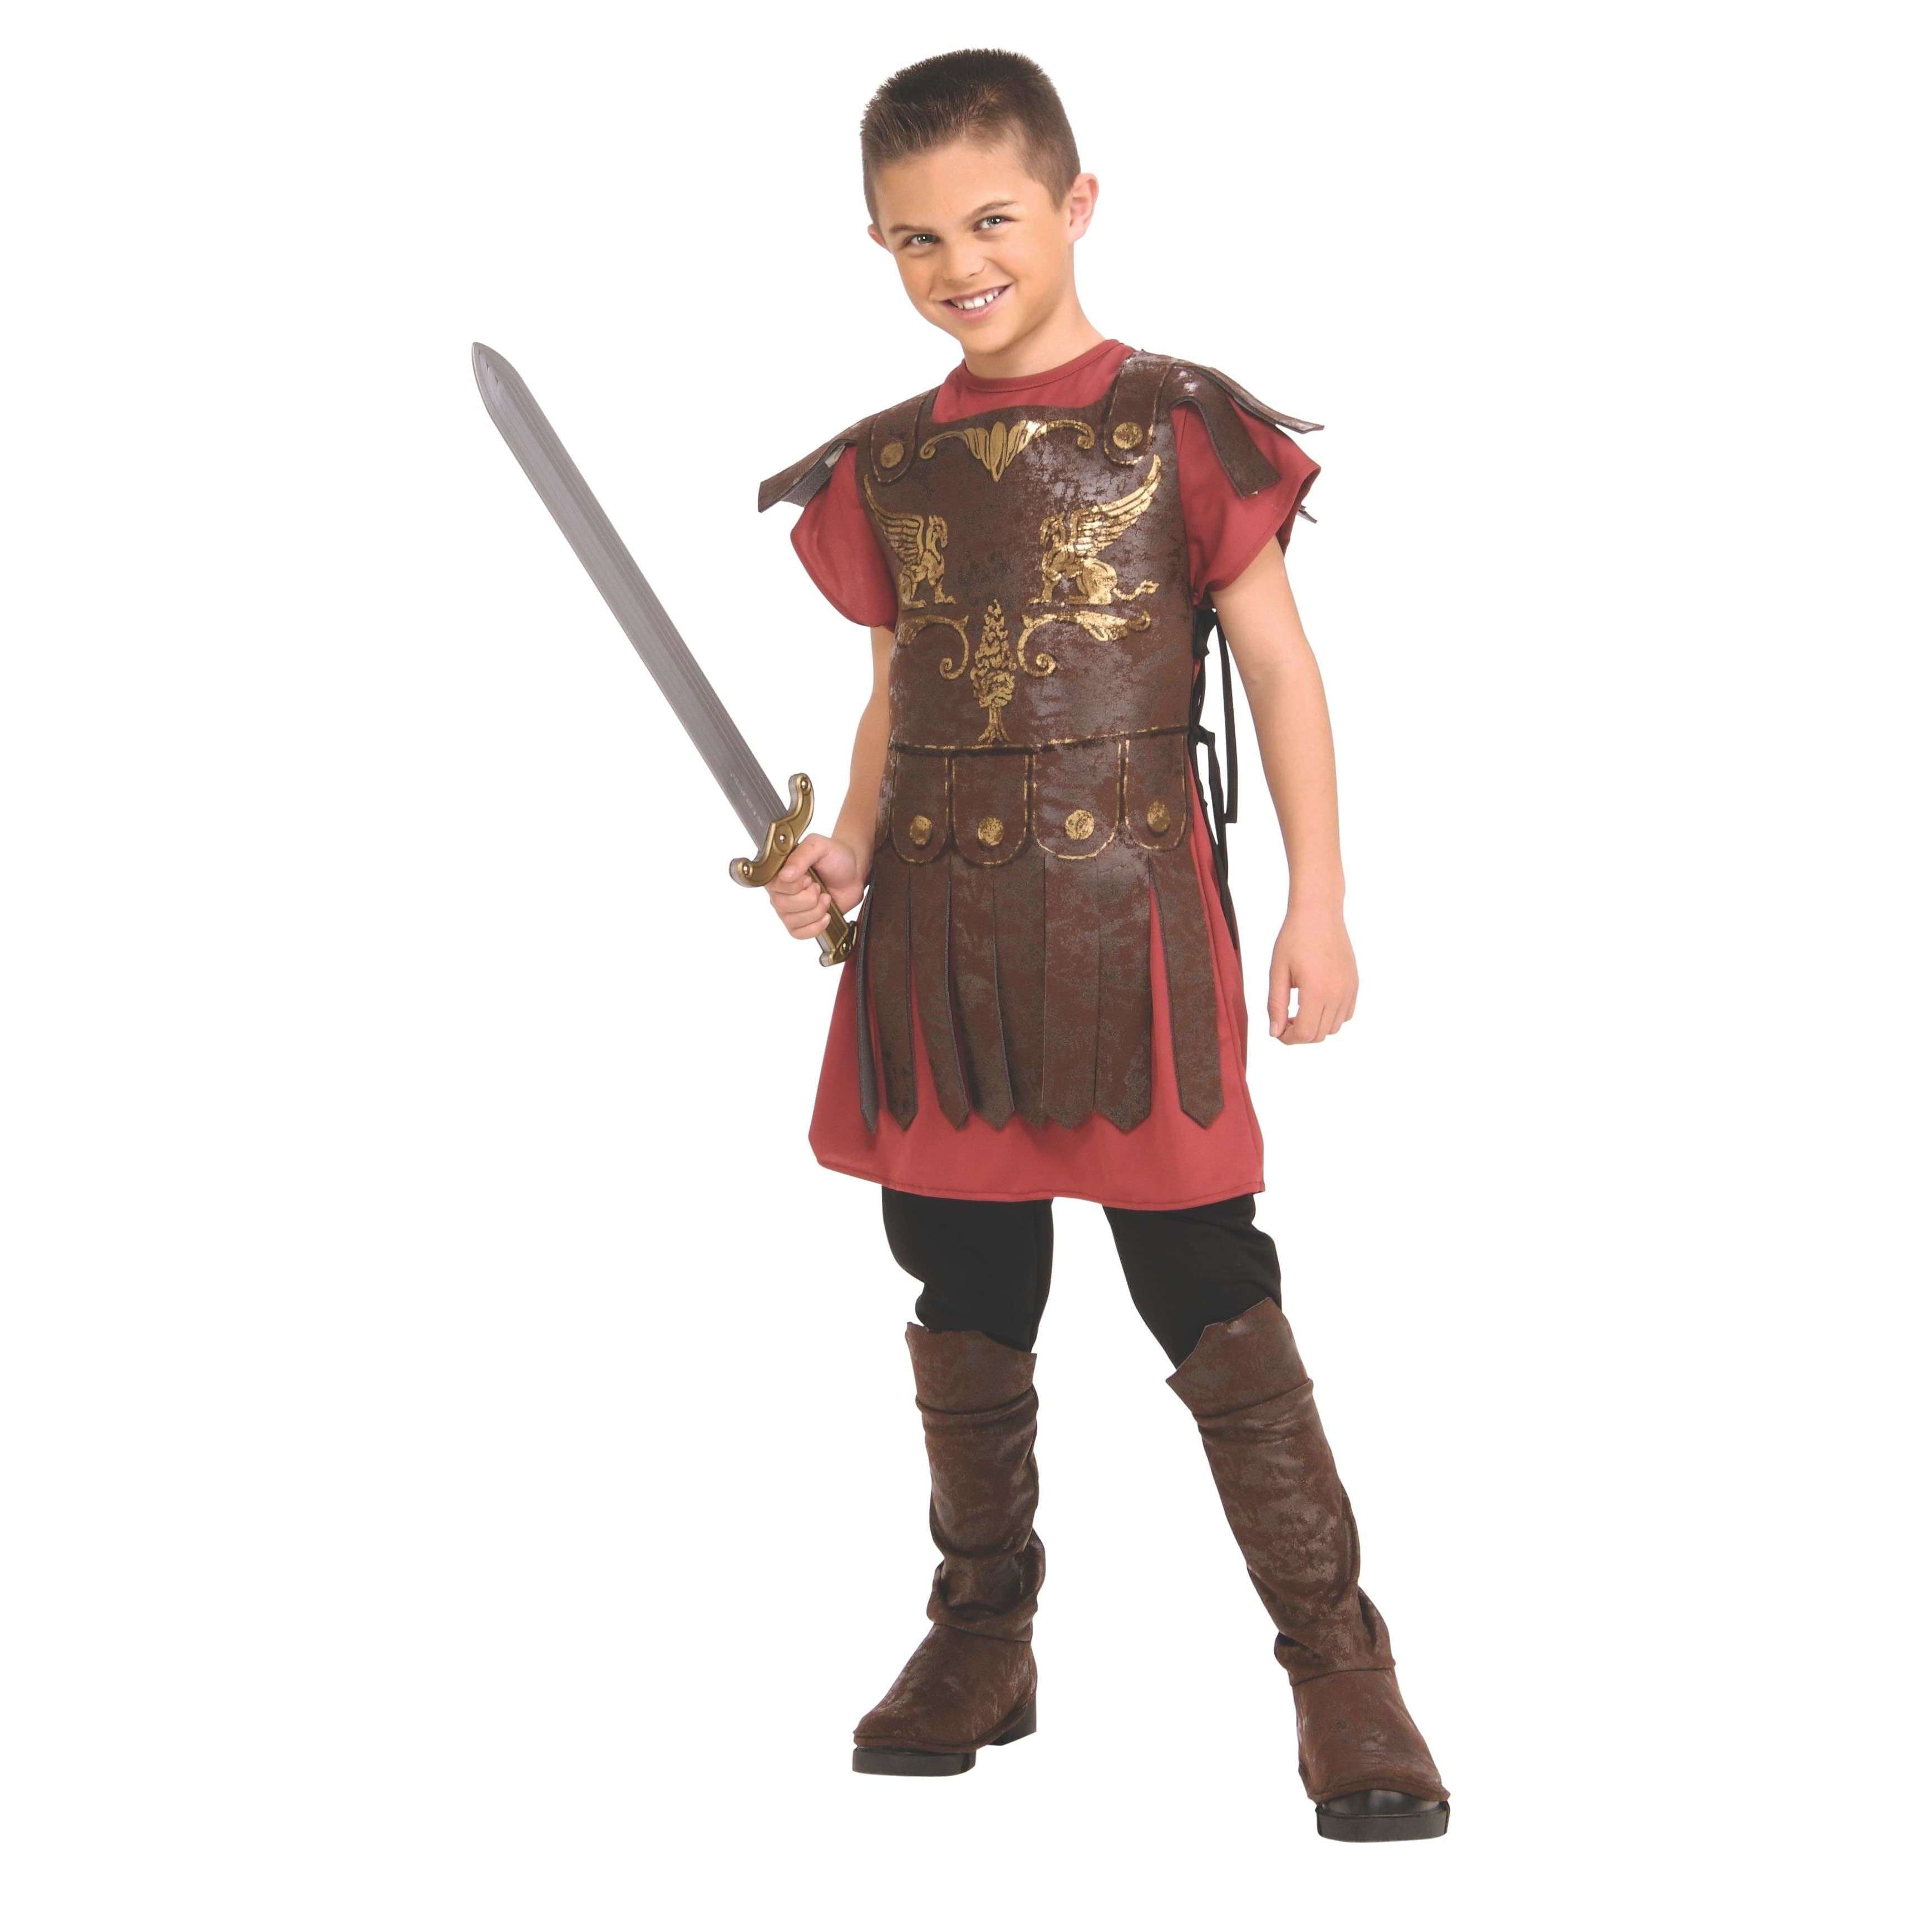 Acient Rome Gladiator Child Costume